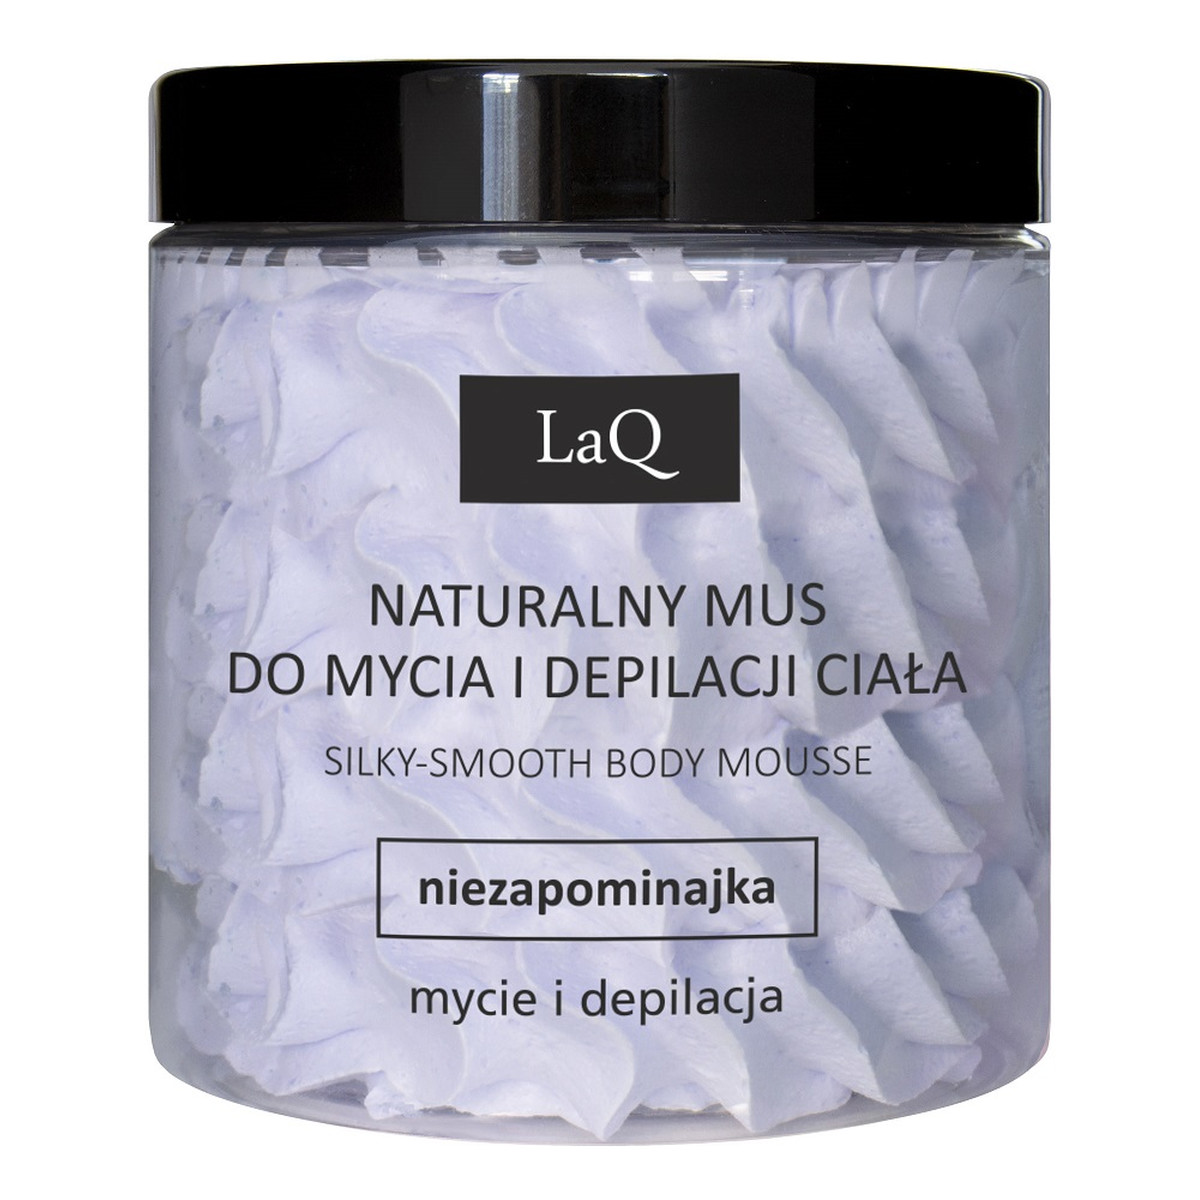 Laq Naturalny mus do mycia i depilacji ciała niezapominajka 250ml